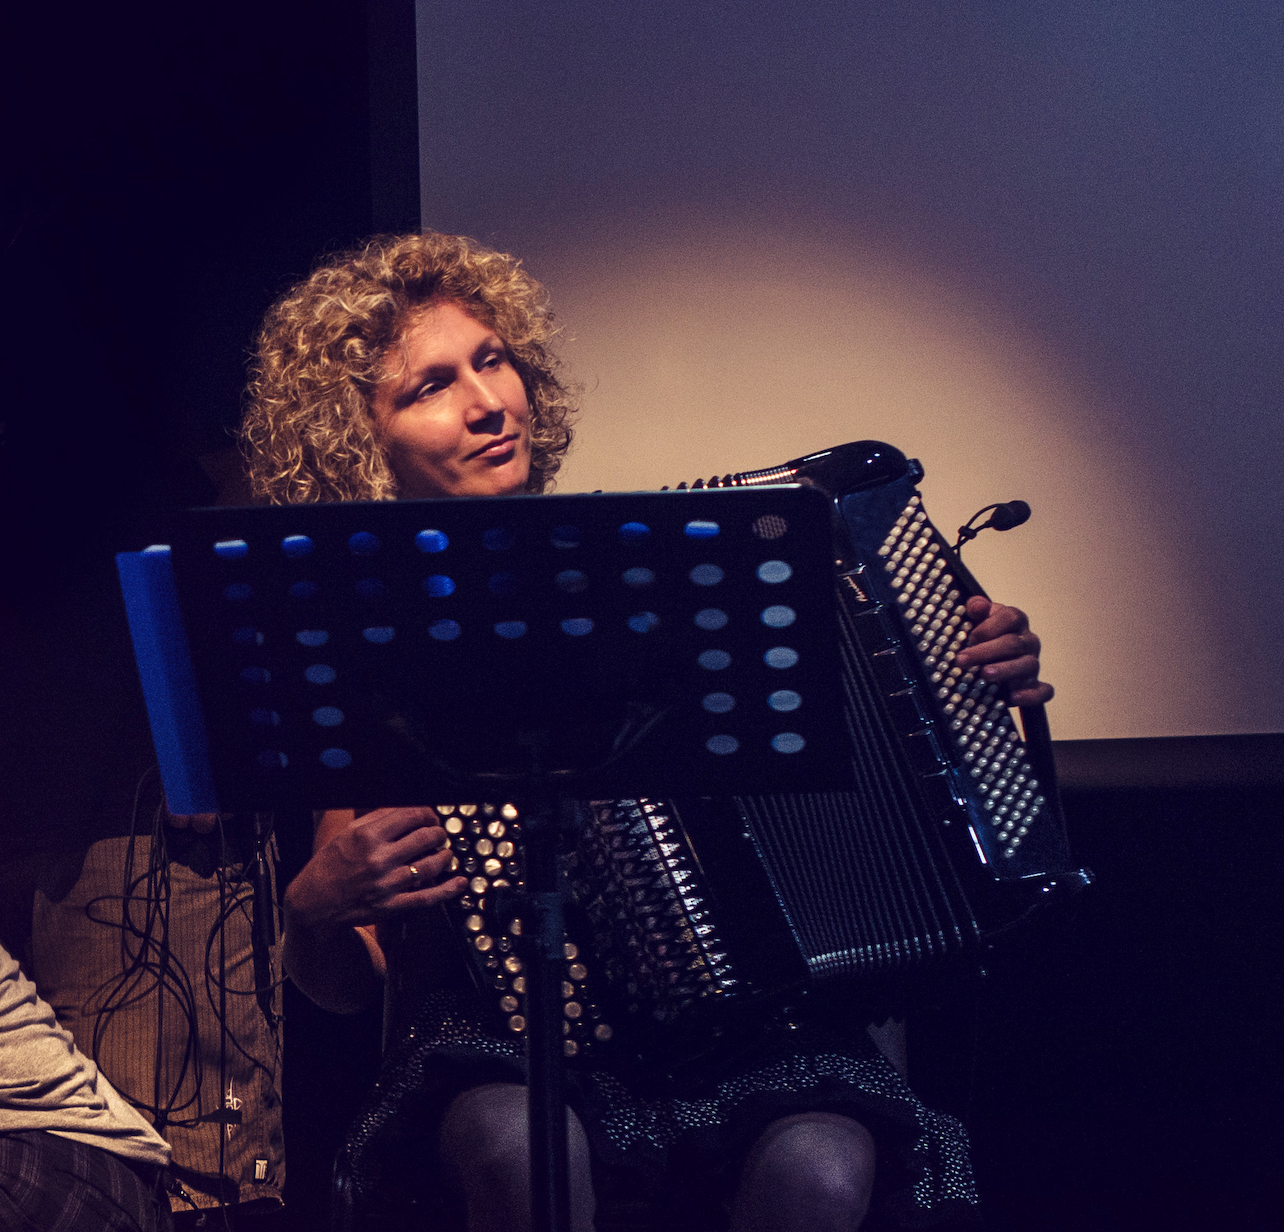 Pour garder la sonorité de l’époque, l’accordéoniste virtuose Brigitte Bettini a été invitée. Elle vient de France spécialement pour ce spectacle.